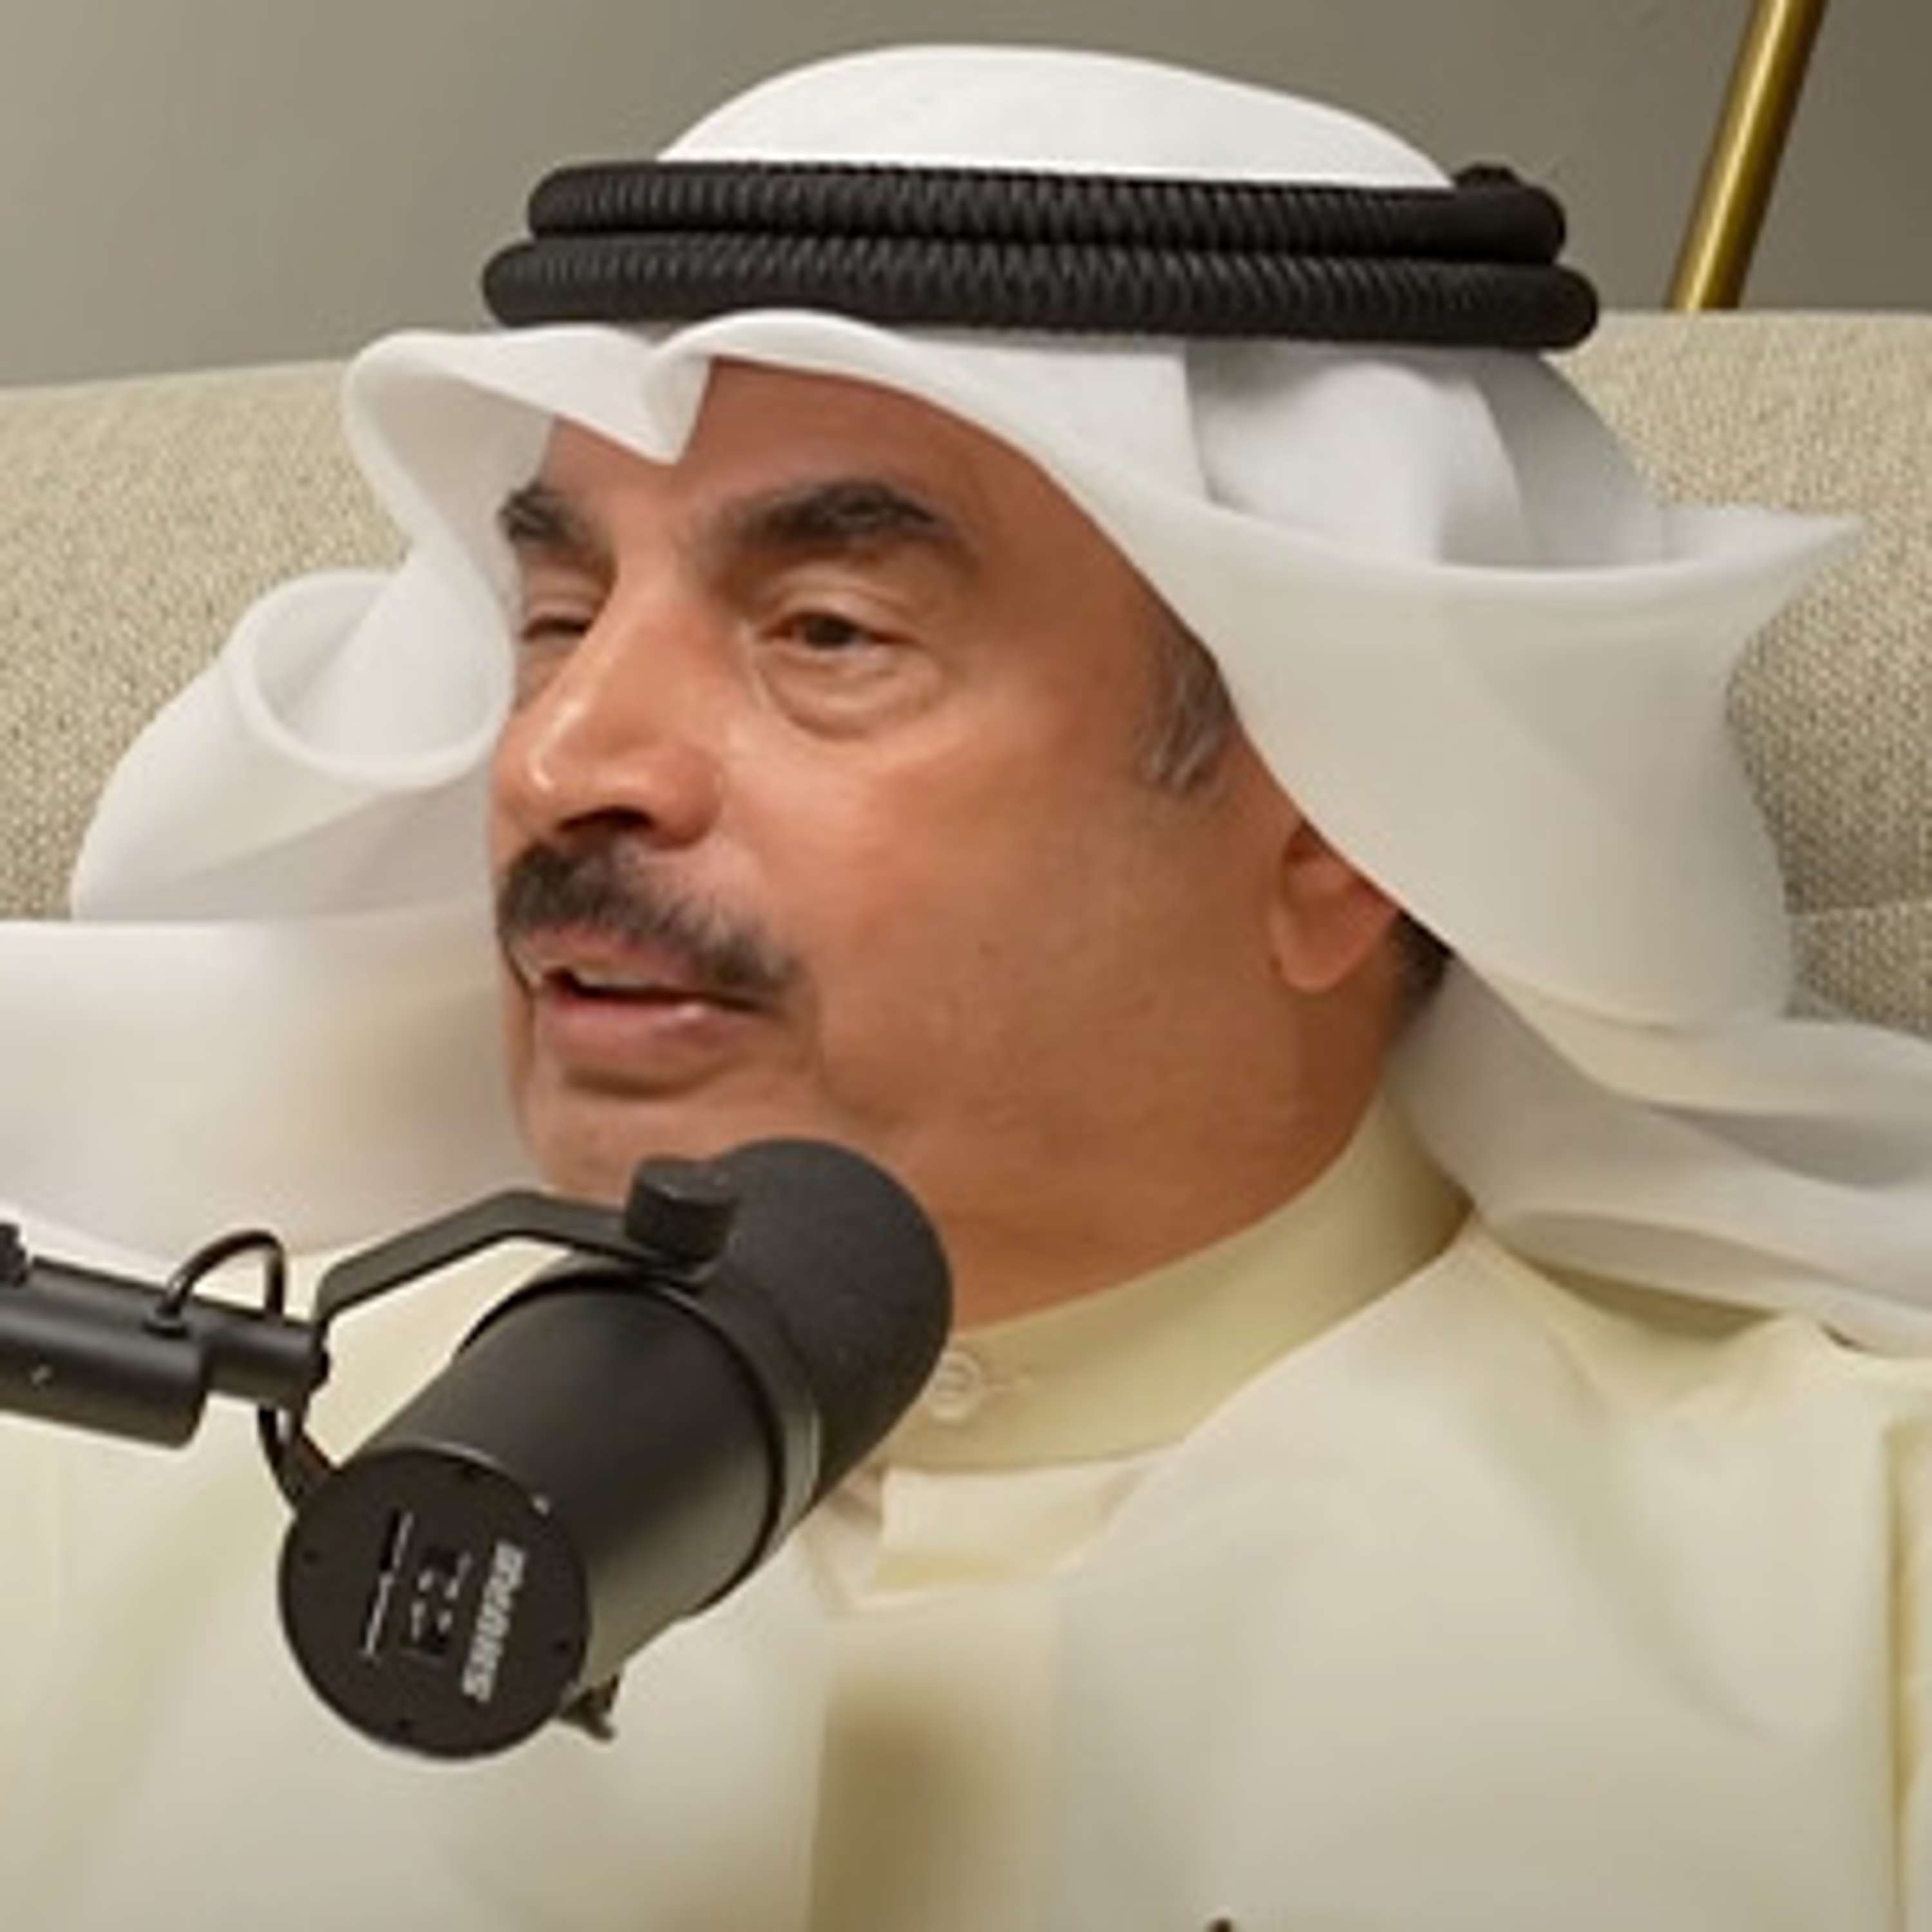 كيف تميزت شخصية الكويتي عن بقية الخليج؟ | د. فهد الفضالة